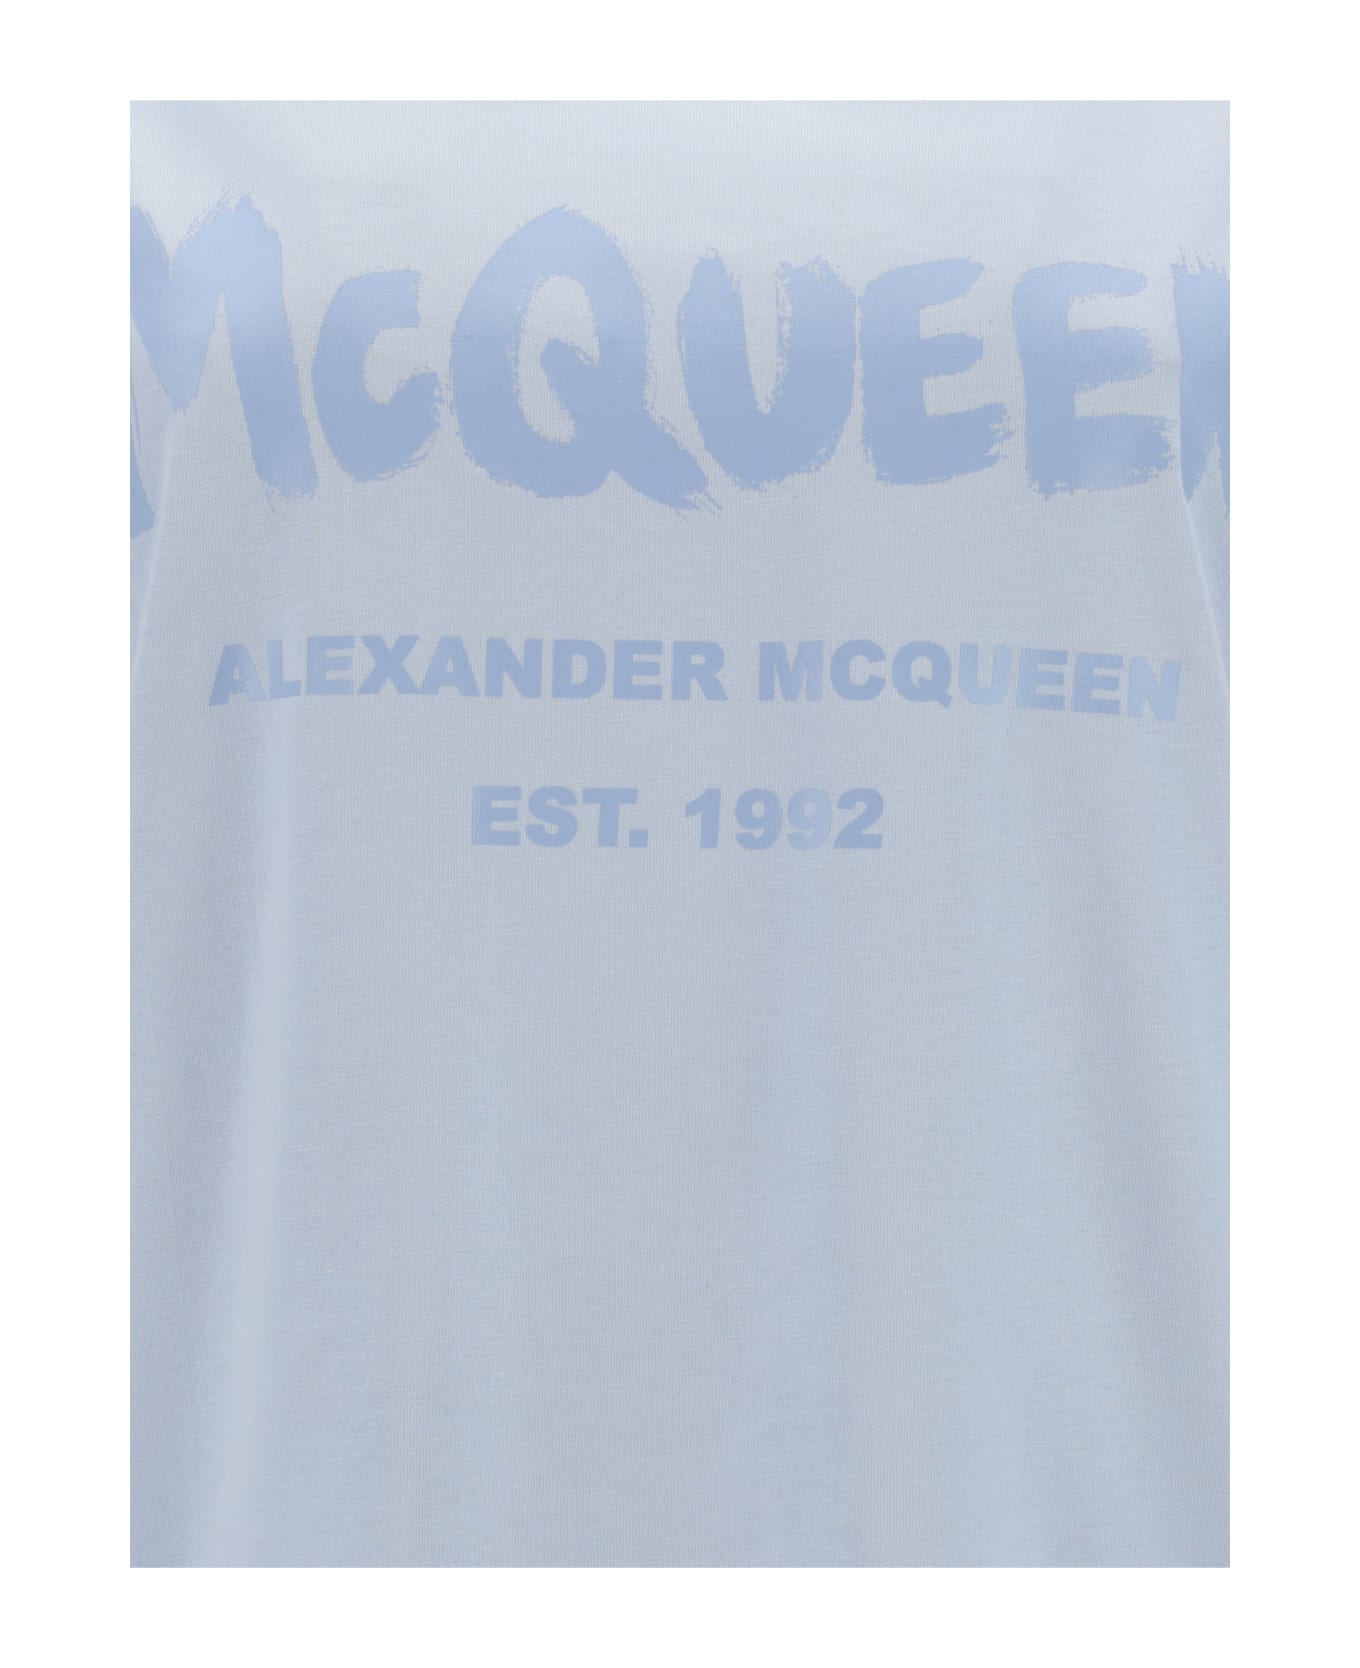 Alexander McQueen Light Blue Mcqueen Graffiti T-shirt - Light blue Tシャツ